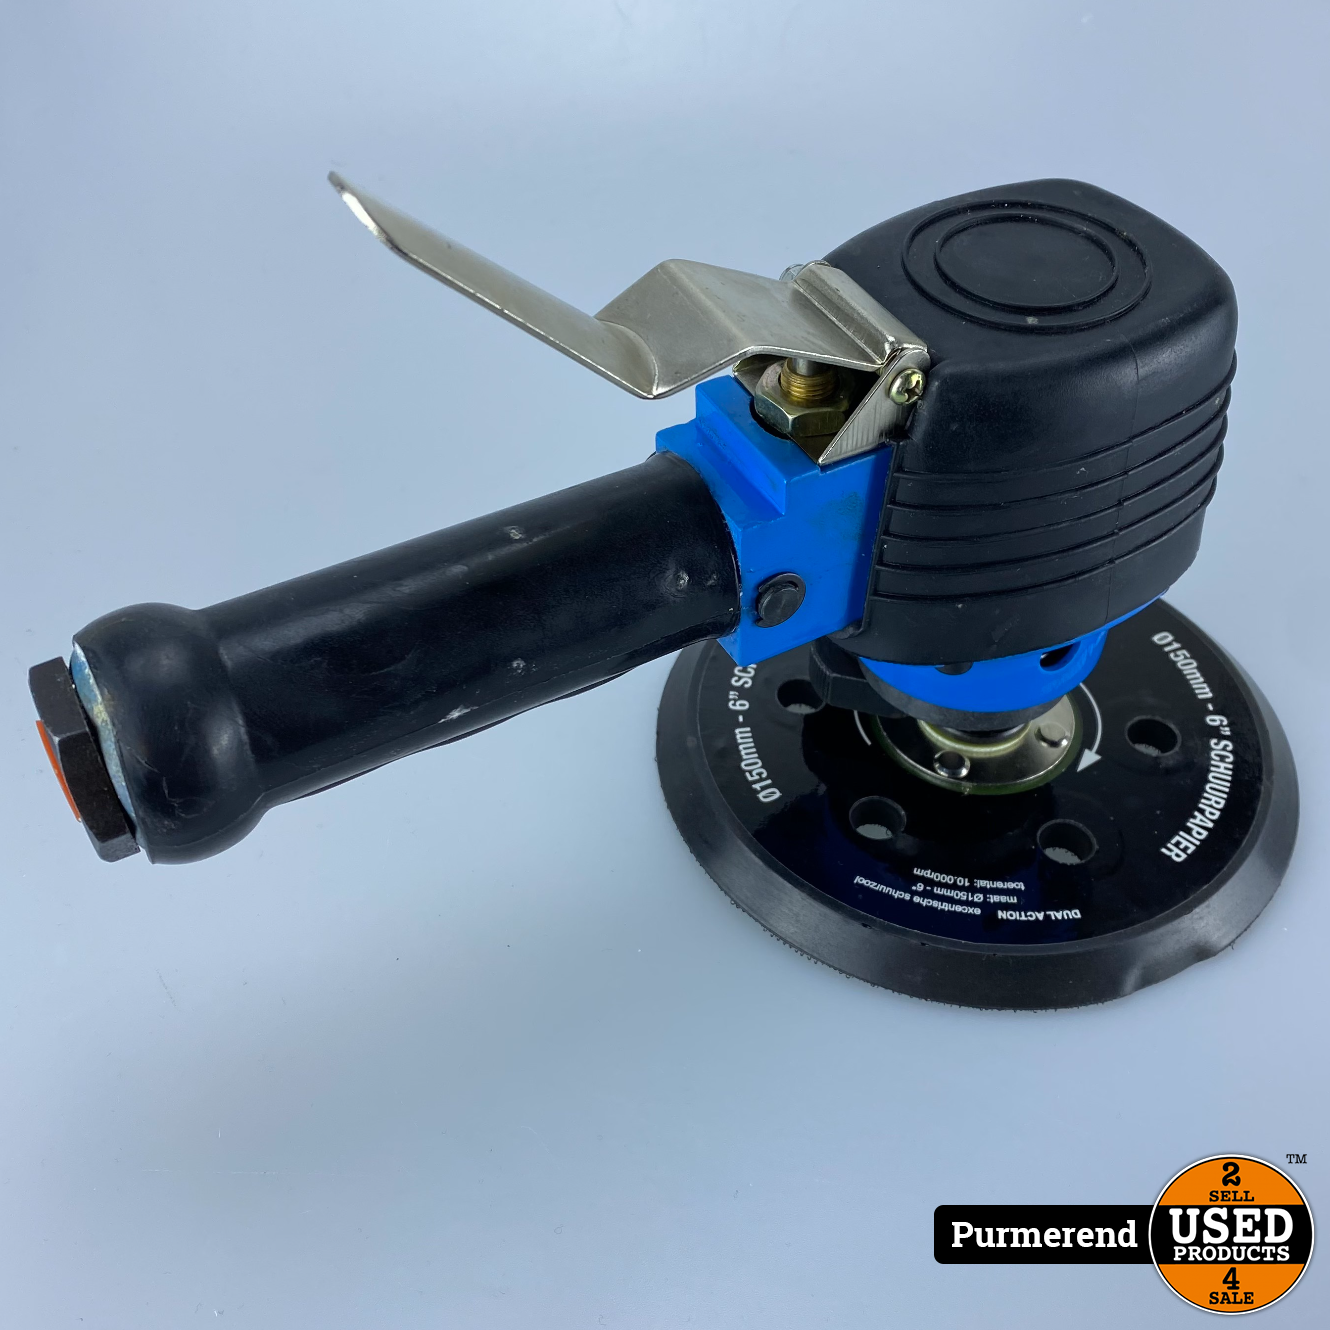 terugtrekken hardware Mondwater TopCraft TAS-150 Pneumatische schuurmachine - Used Products Purmerend